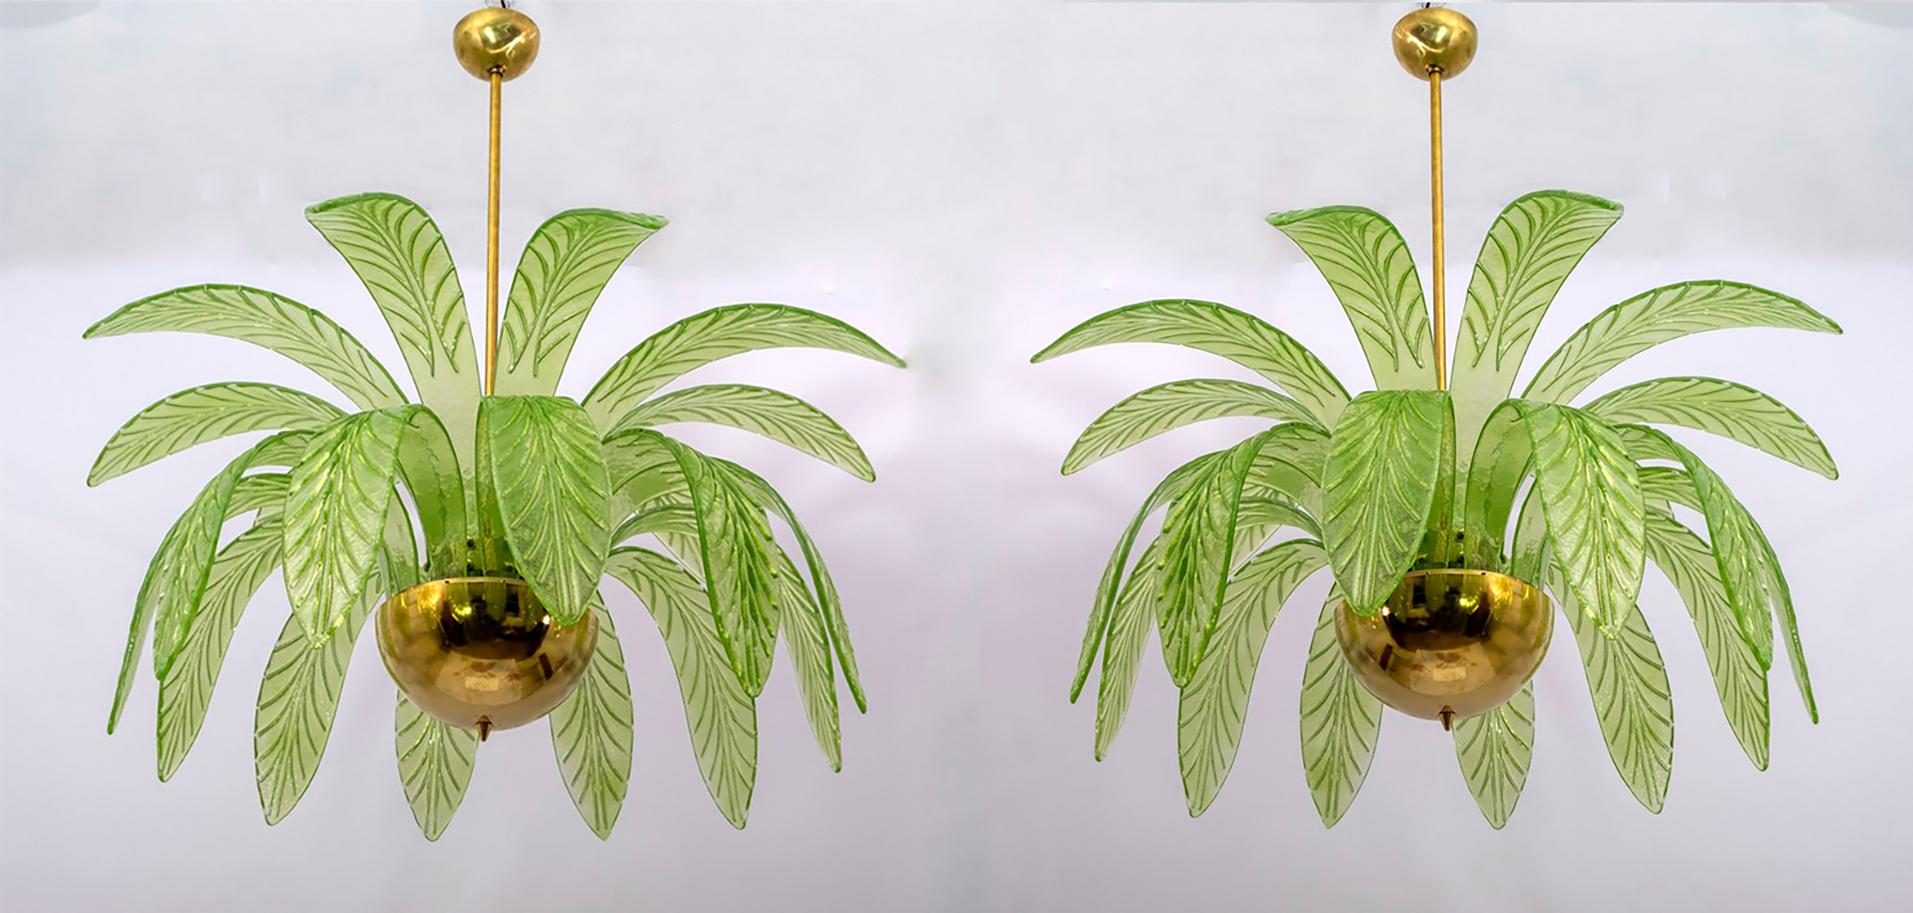 Paar Kronleuchter aus mundgeblasenem Murano-Glas, grüne Murano-Glasblätter, Messingstruktur, drei Glühbirnen.
Der Kronleuchter bildet die Krone einer Palme nach.
Wir liefern Reduzierstücke für E12 USA Glühbirnen.